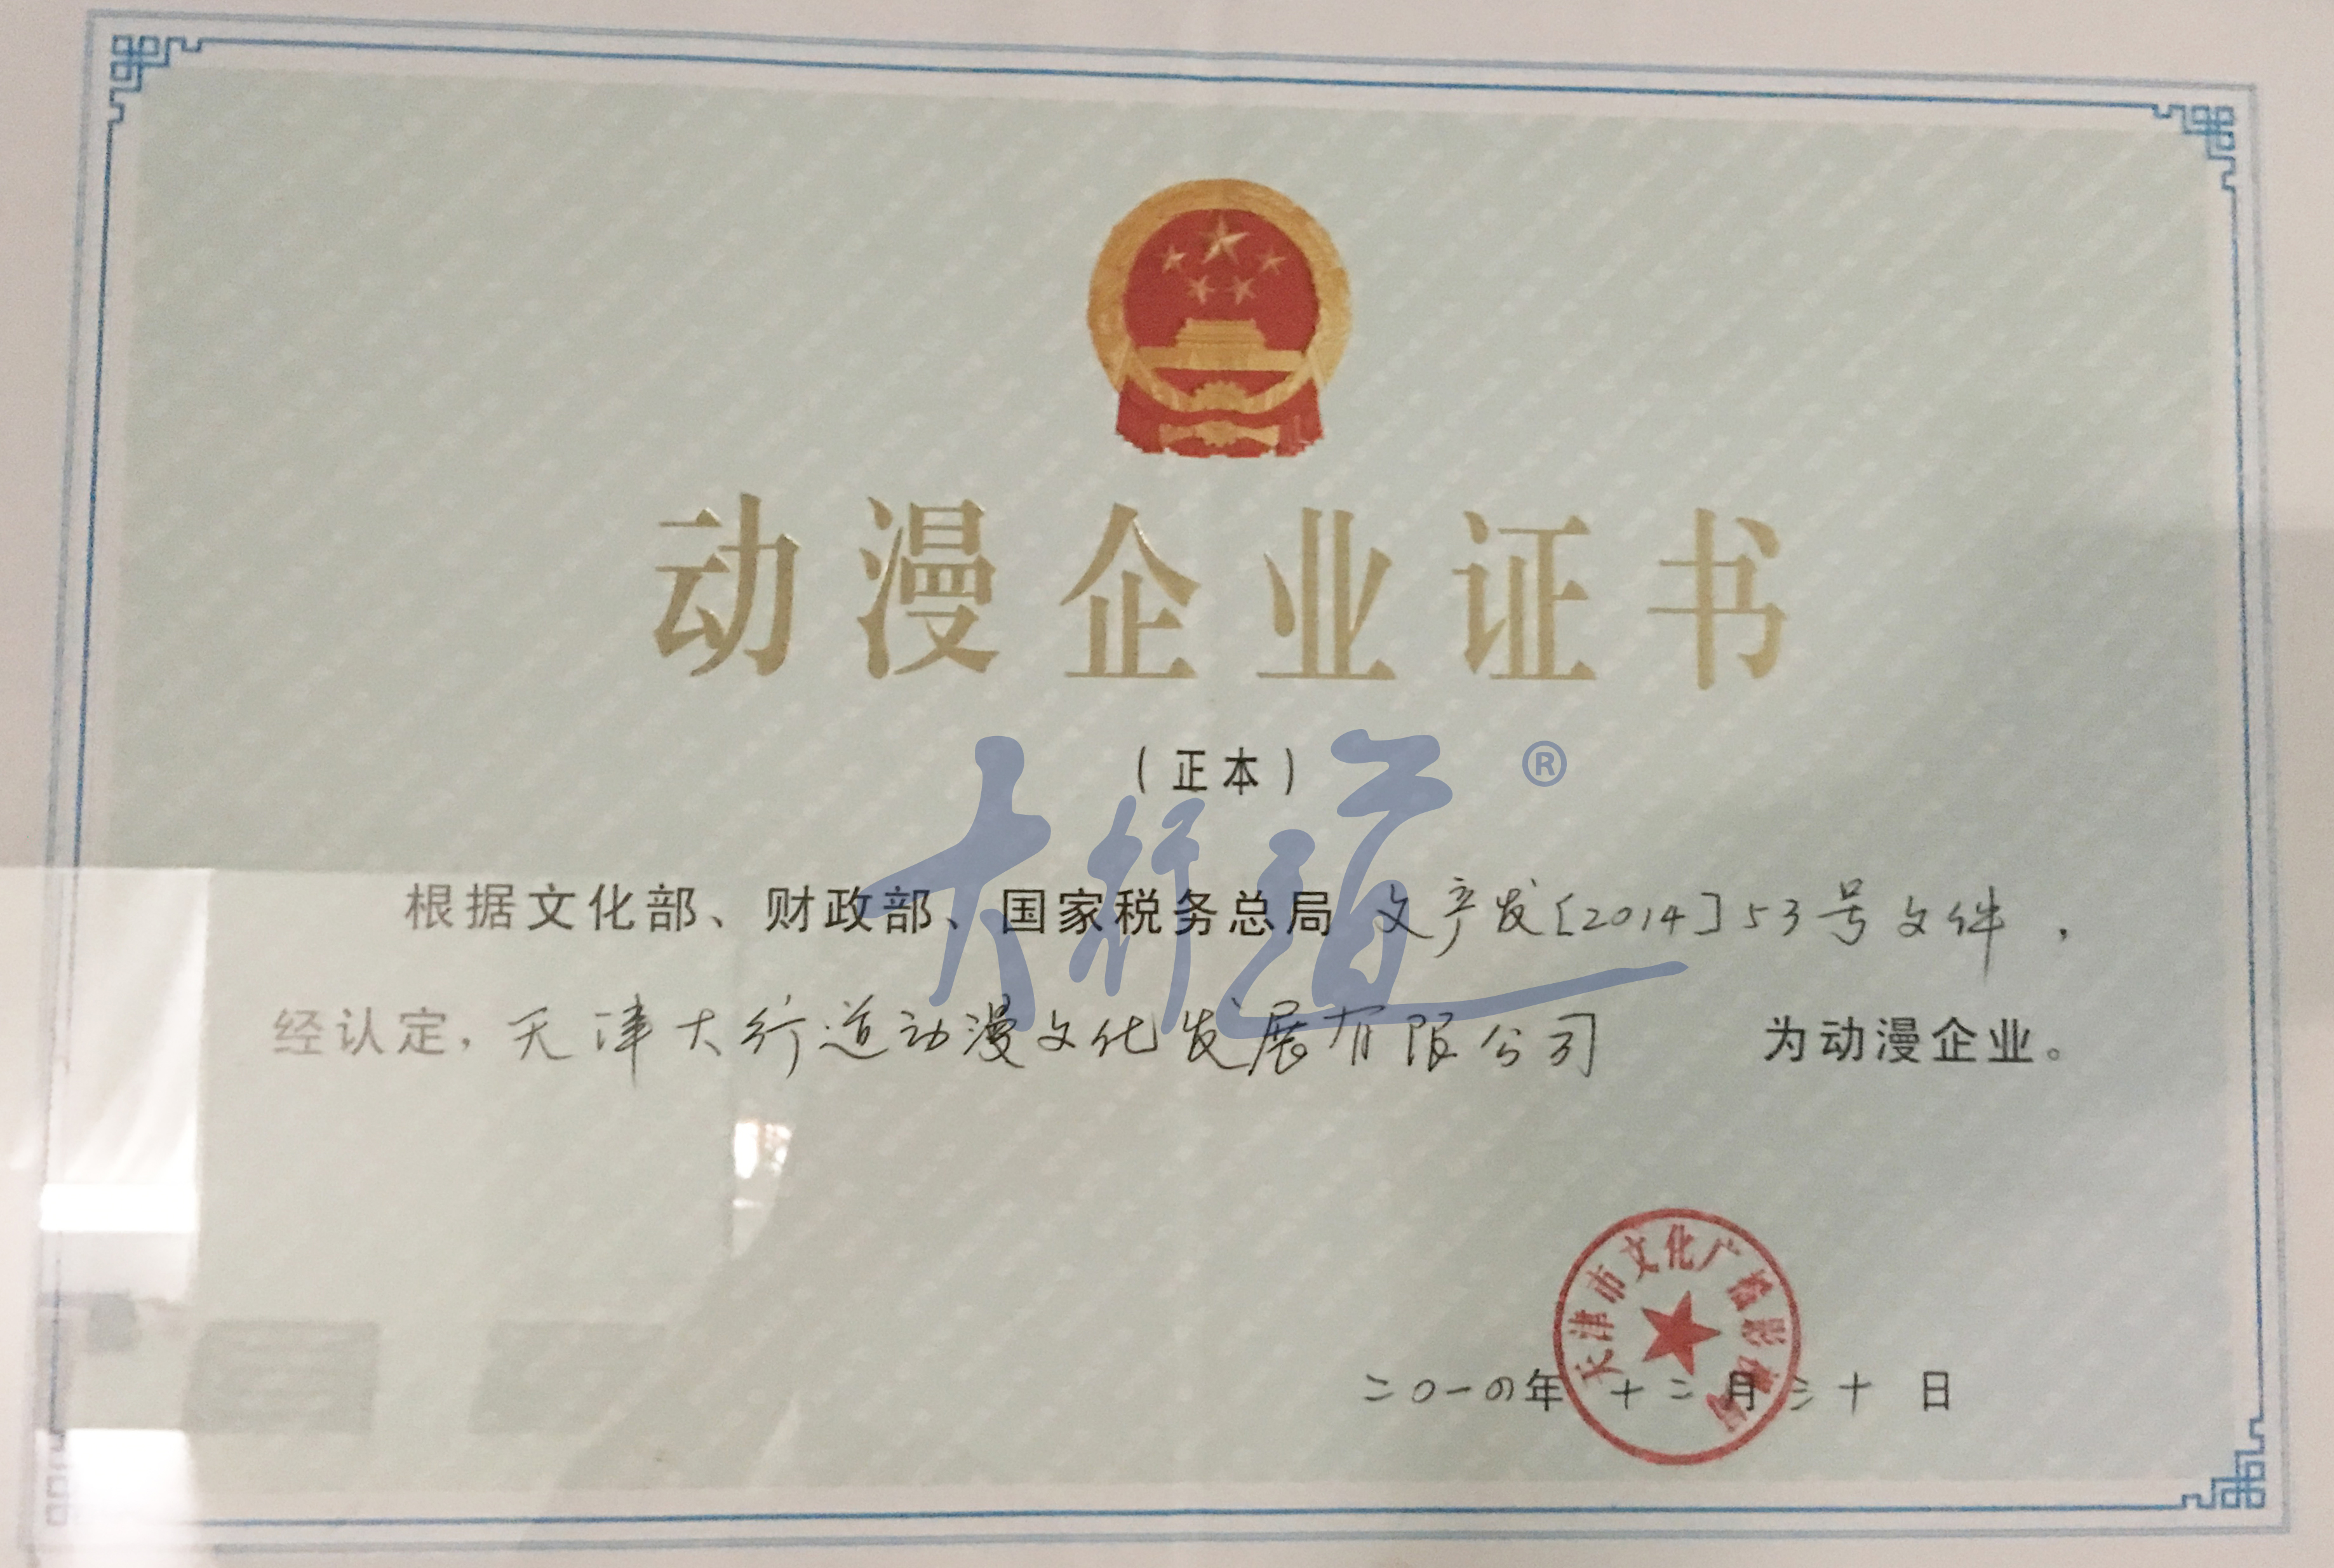 我公司2014年荣获动漫企业证书